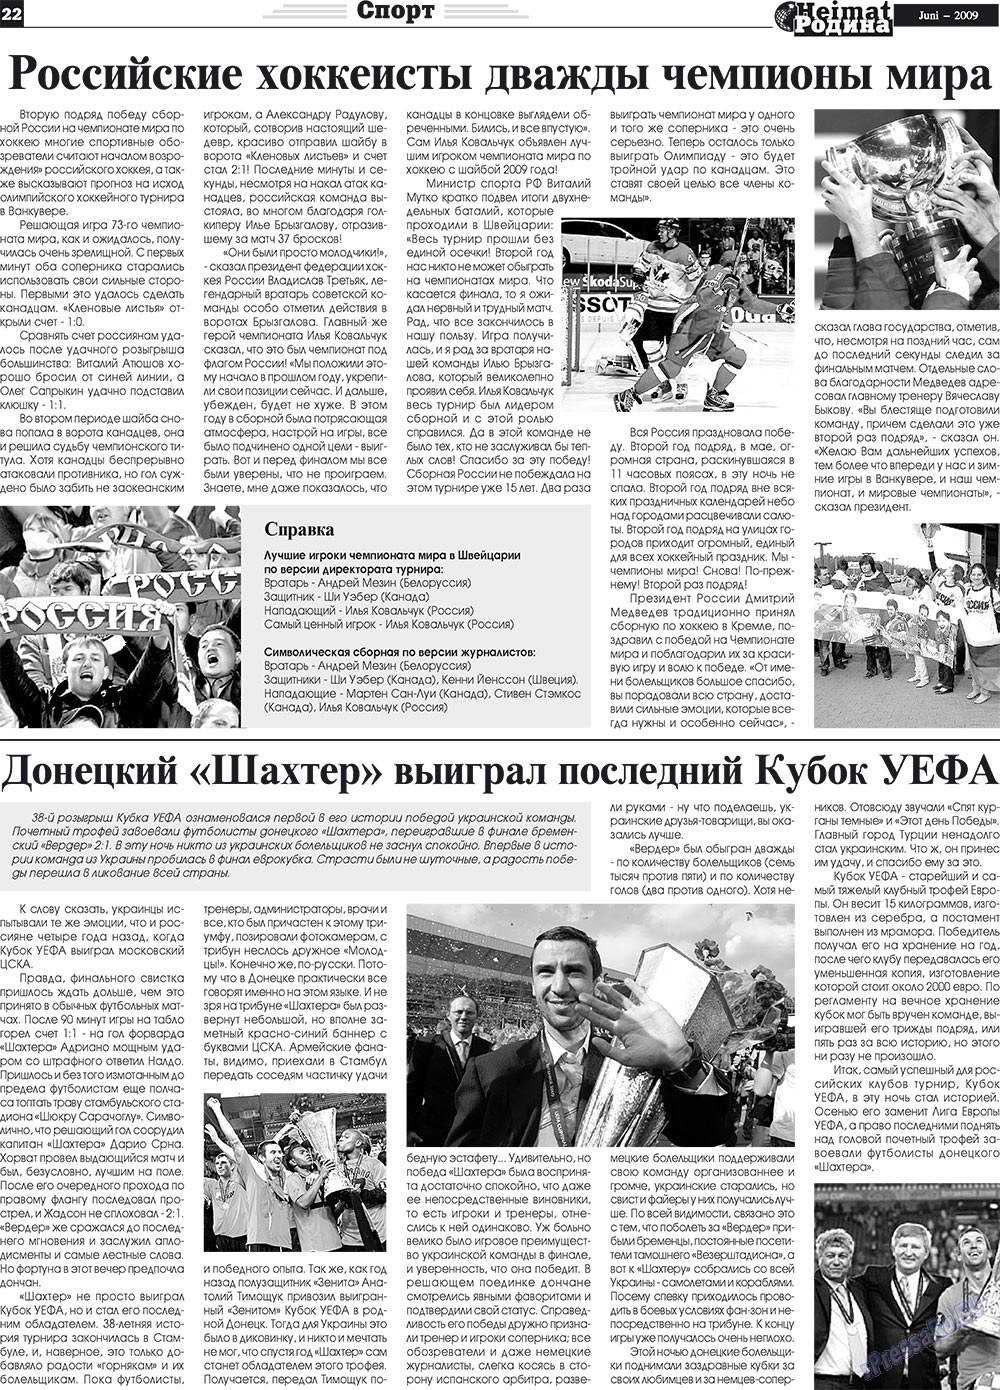 Heimat-Родина (газета). 2009 год, номер 6, стр. 22